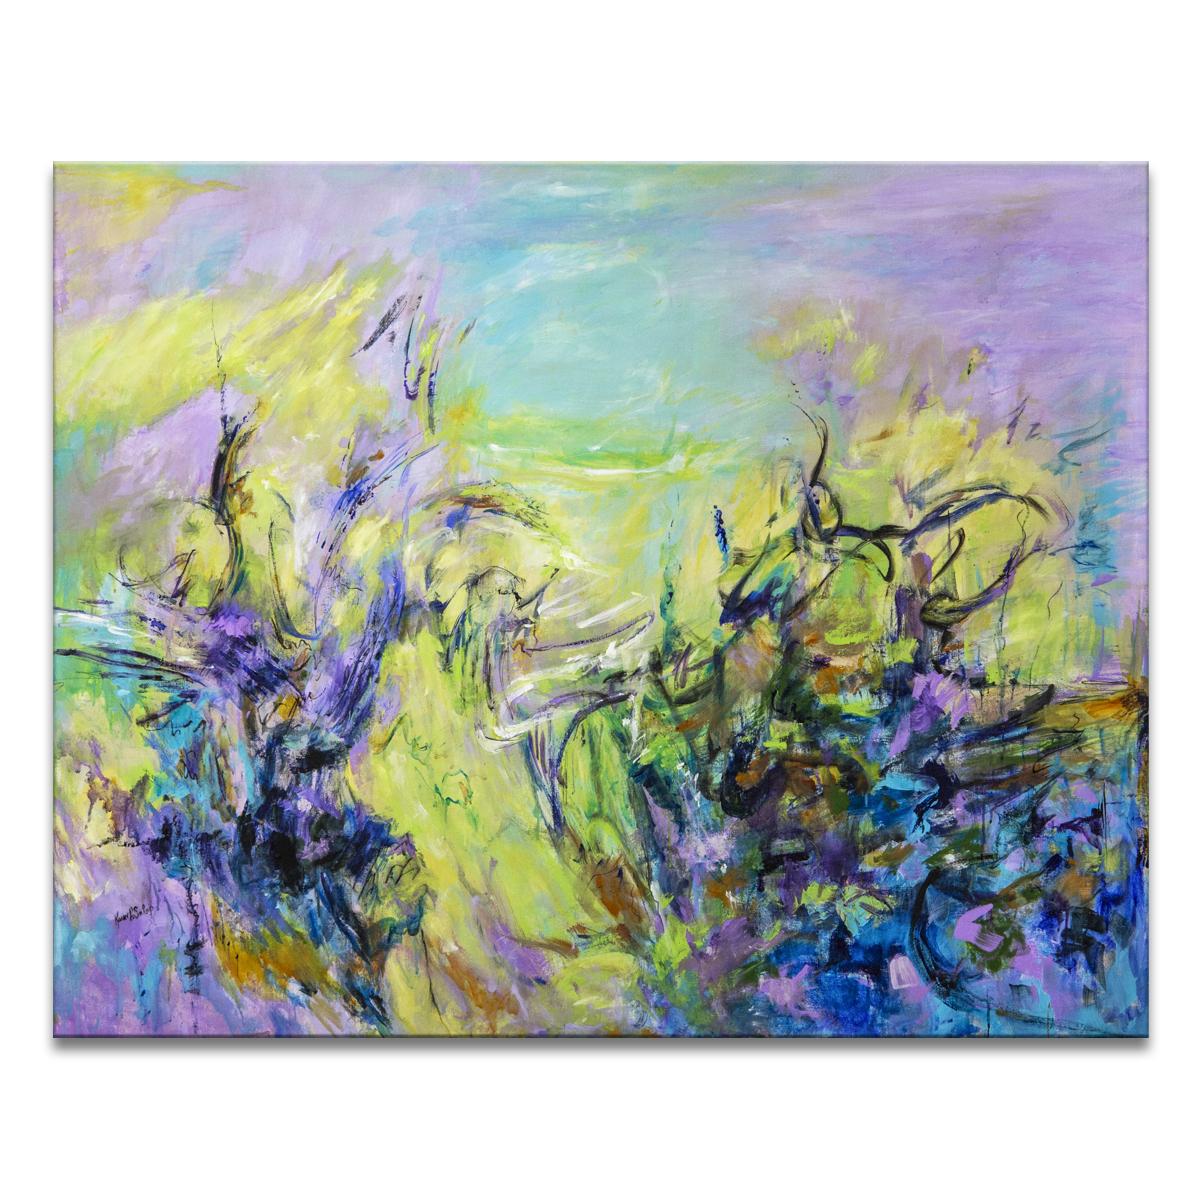 la peinture originale sur toile enveloppée 'The Clearing' présente une esthétique abstraite énergique dans des tons vibrants de violet, bleu, vert, marron et noir. Divinité moderne exprimée sur toile, l'œuvre de Karen H. Salup présente une multitude